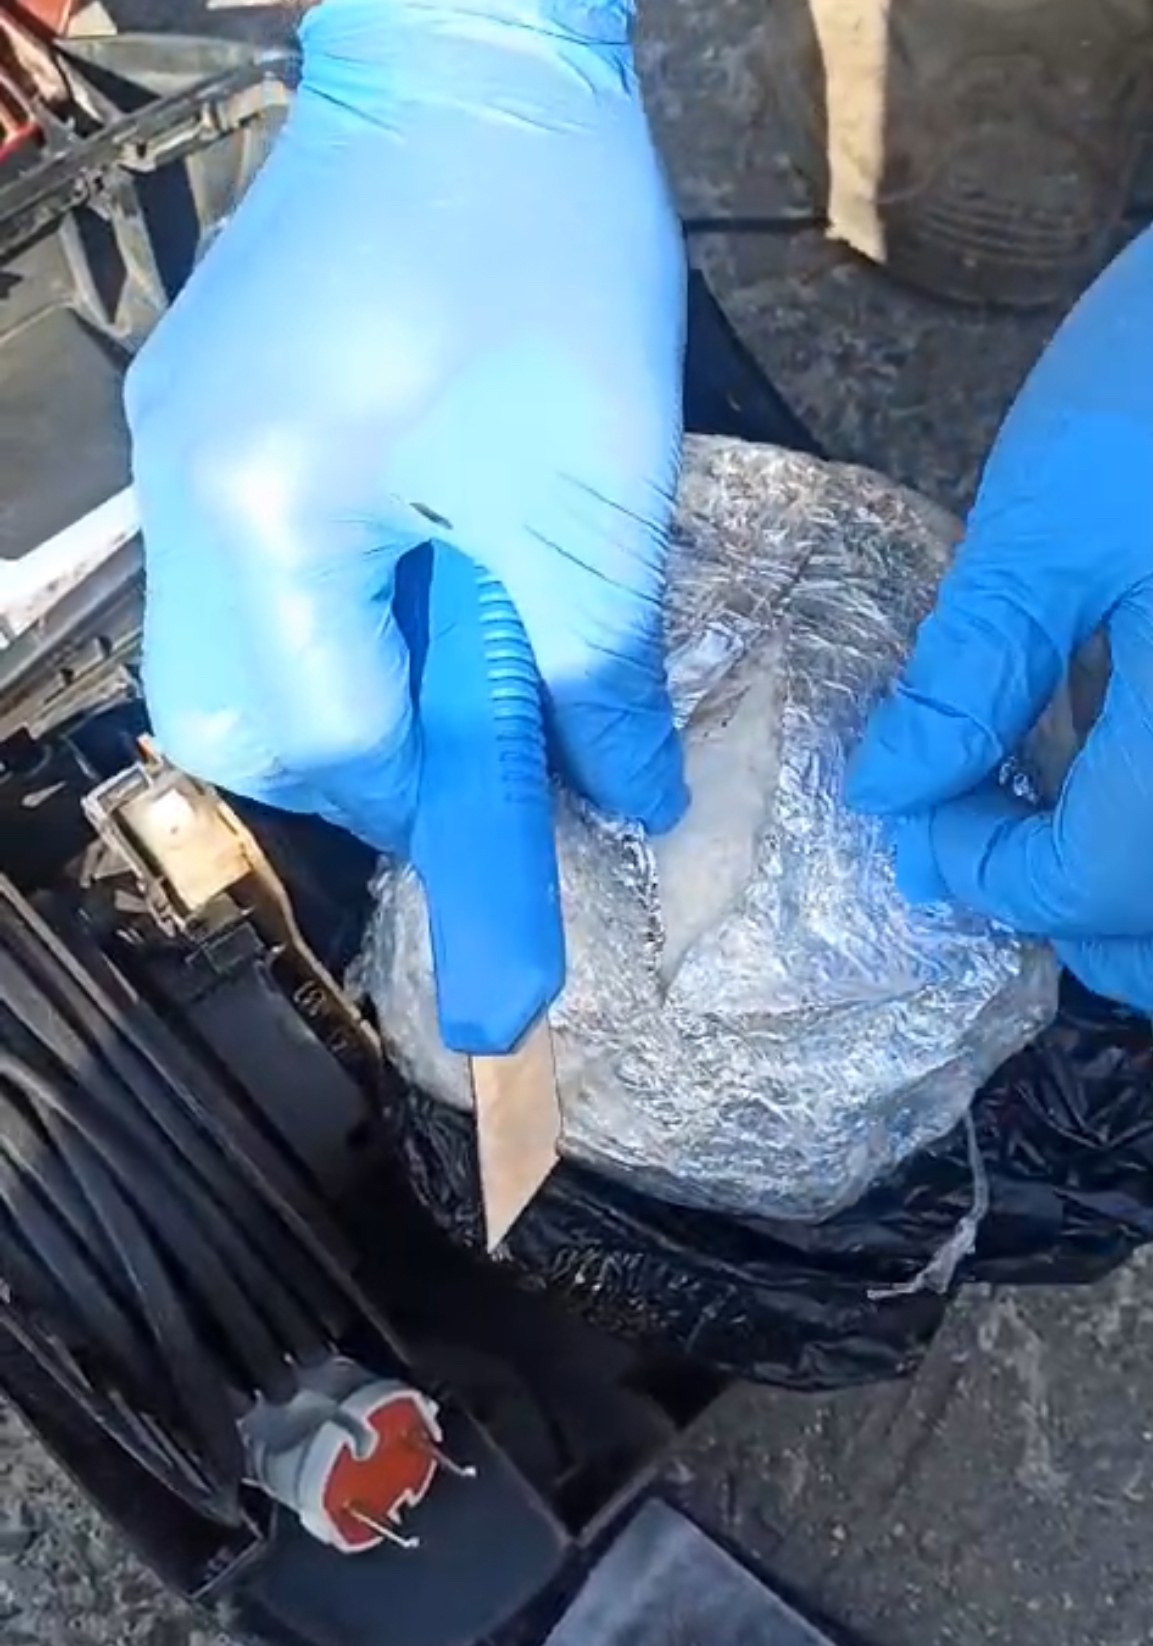 Samsun'da elektrikli süpürgeye gizlenmiş 1 kilogram uyuşturucu ele geçirildi